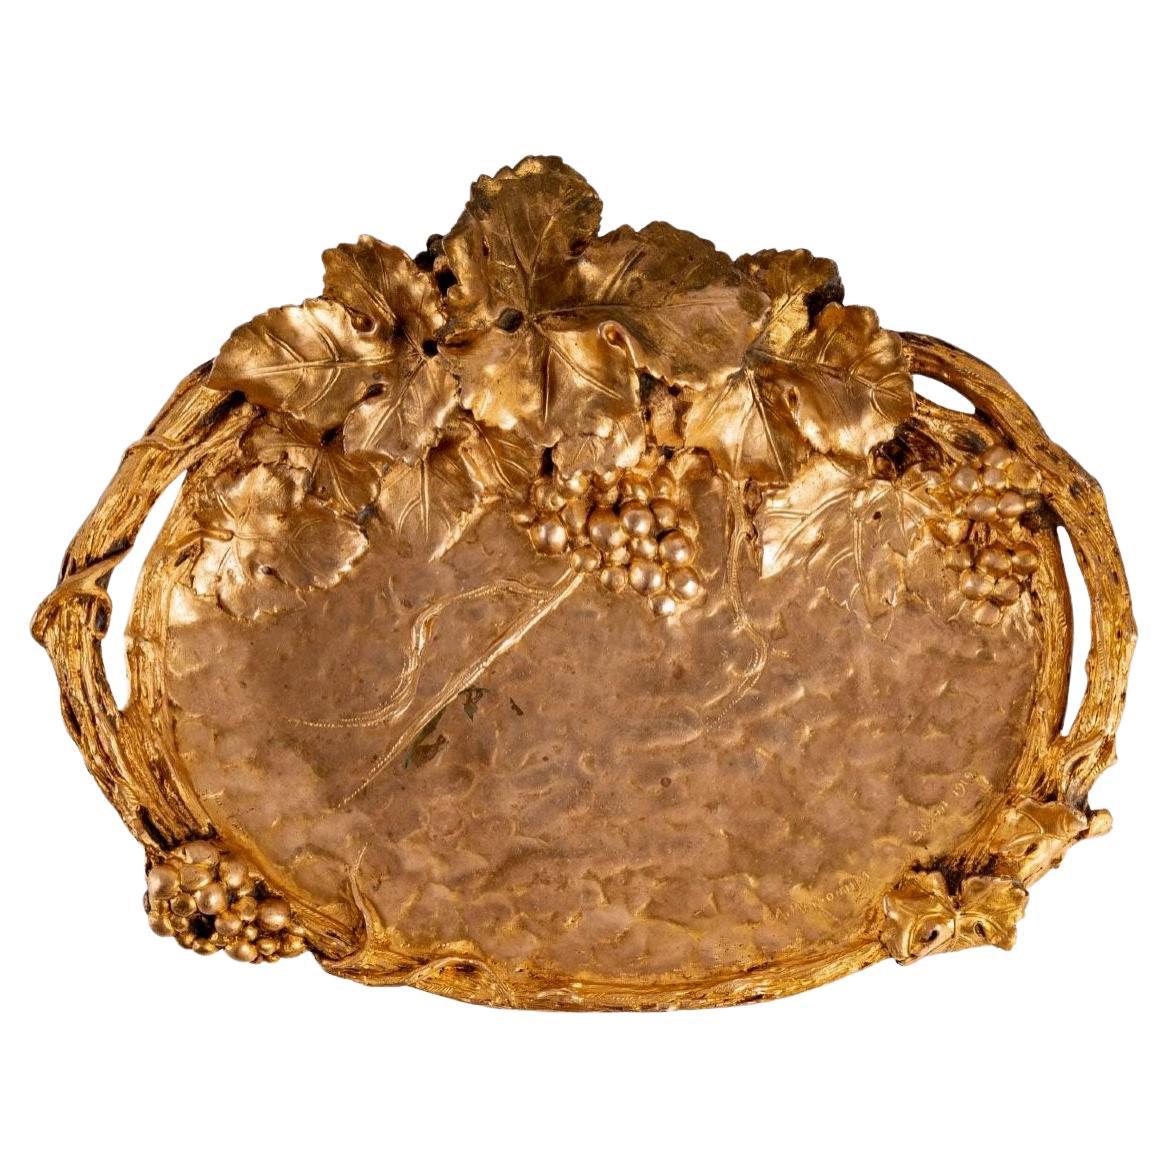 Obstschale aus gemeißelter Bronze – Kupferpatina – Albert Marionnet – um 1912